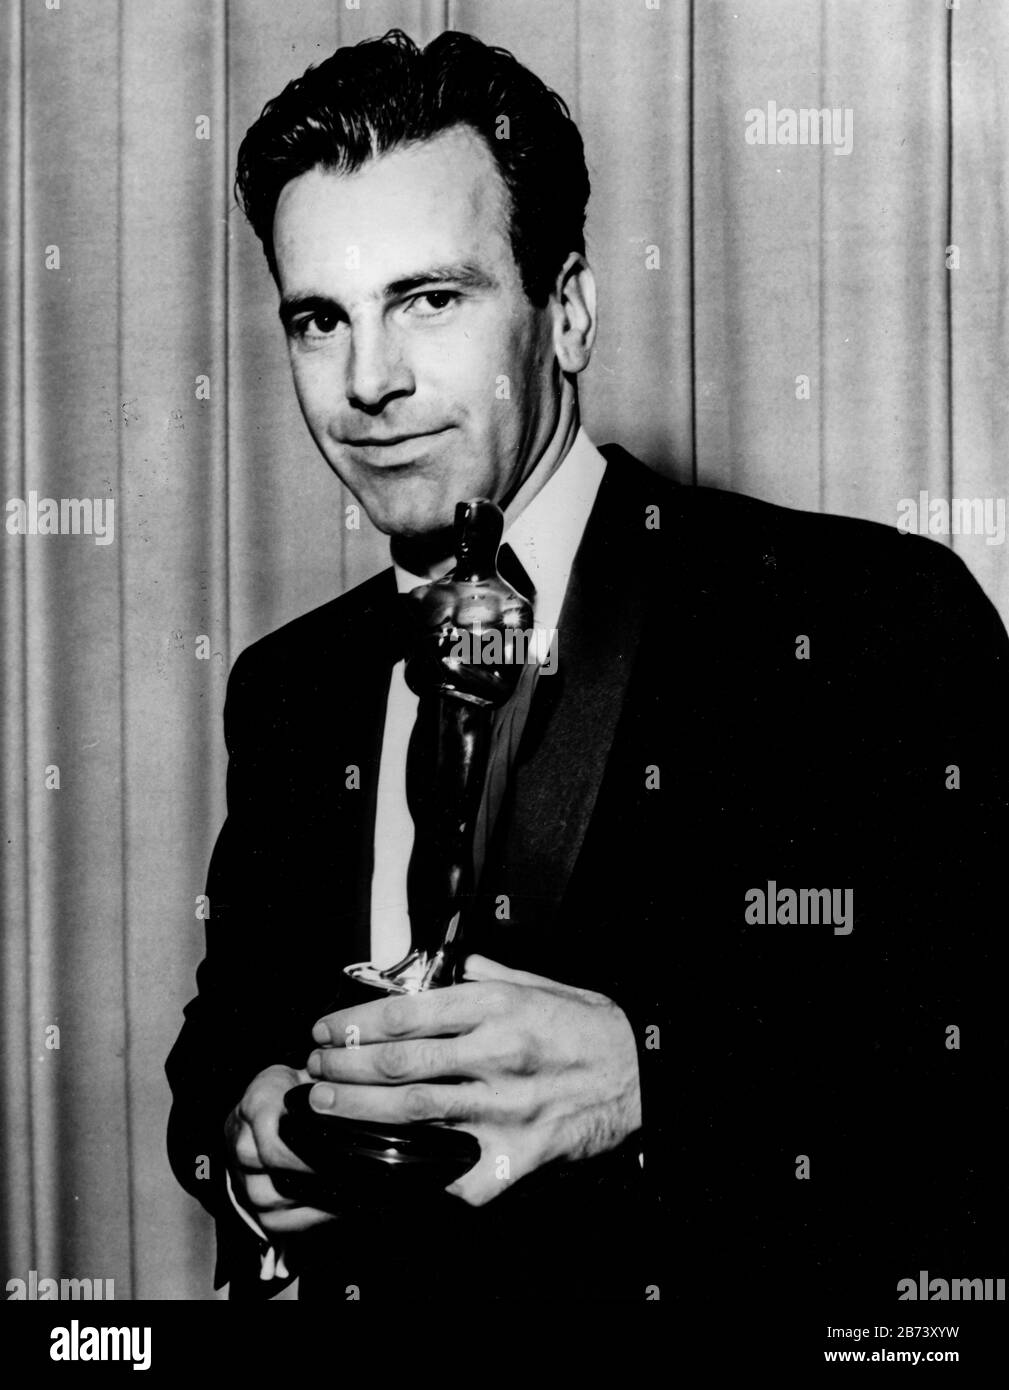 maximilian schell, academia premia, oscar miglior attore per il giudizio cinematografico a norimberga, 1961 Foto Stock